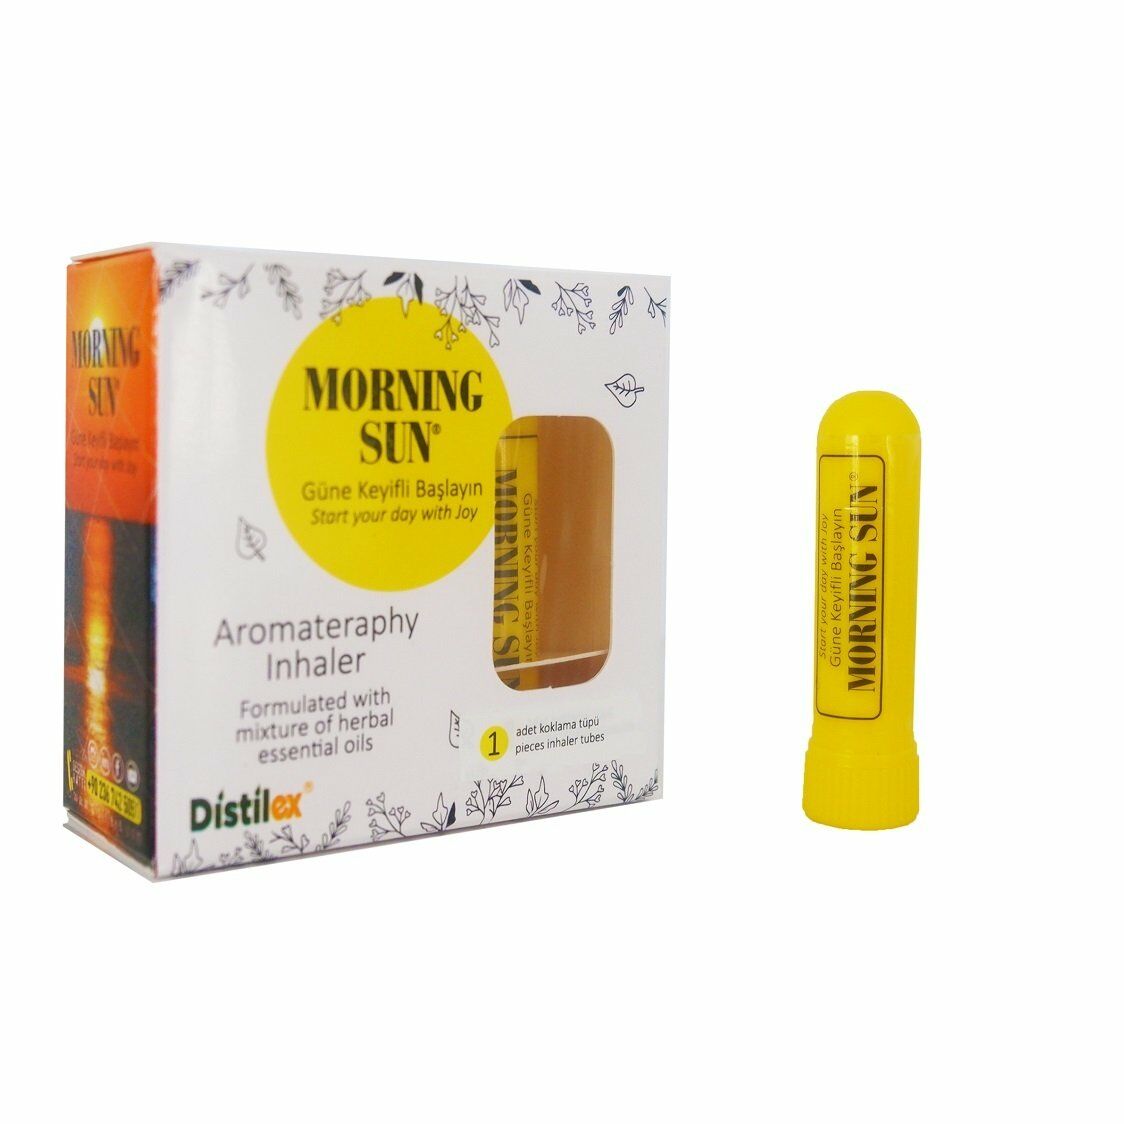 Distilex Morning Sun Aromaterapi İnhaler Koklama Tüpü